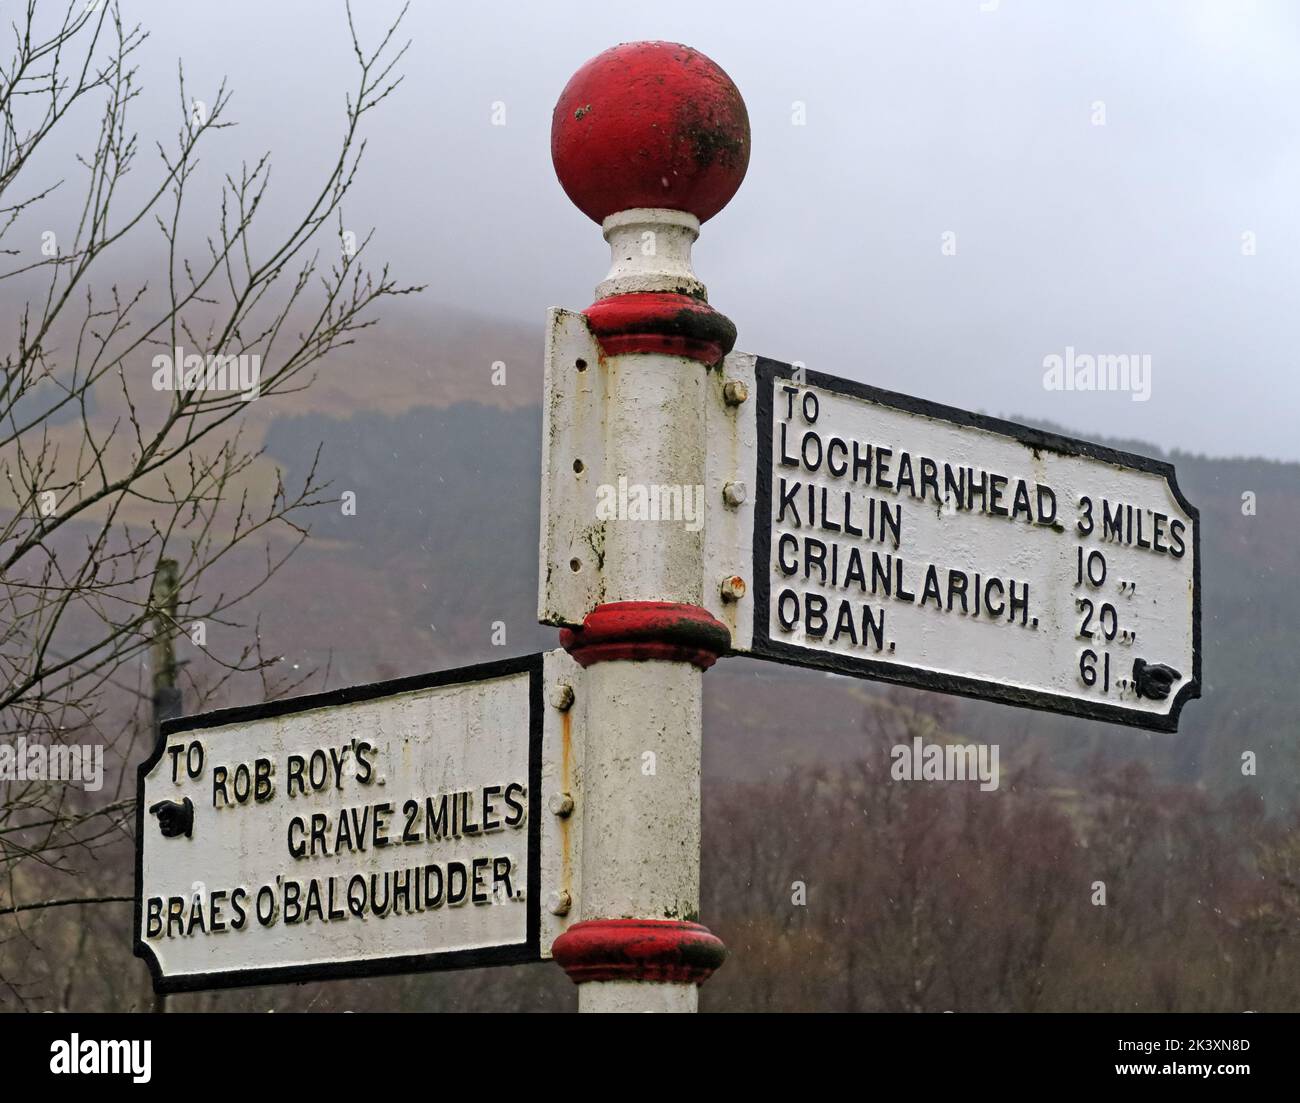 Panneau de route Scottish, Fingerpost, vers Rob Roys grave, Balquhidder, Lochearnhead, Écosse, Royaume-Uni, FK19 8PA, vers Oban, Killin & lochearnhead Banque D'Images